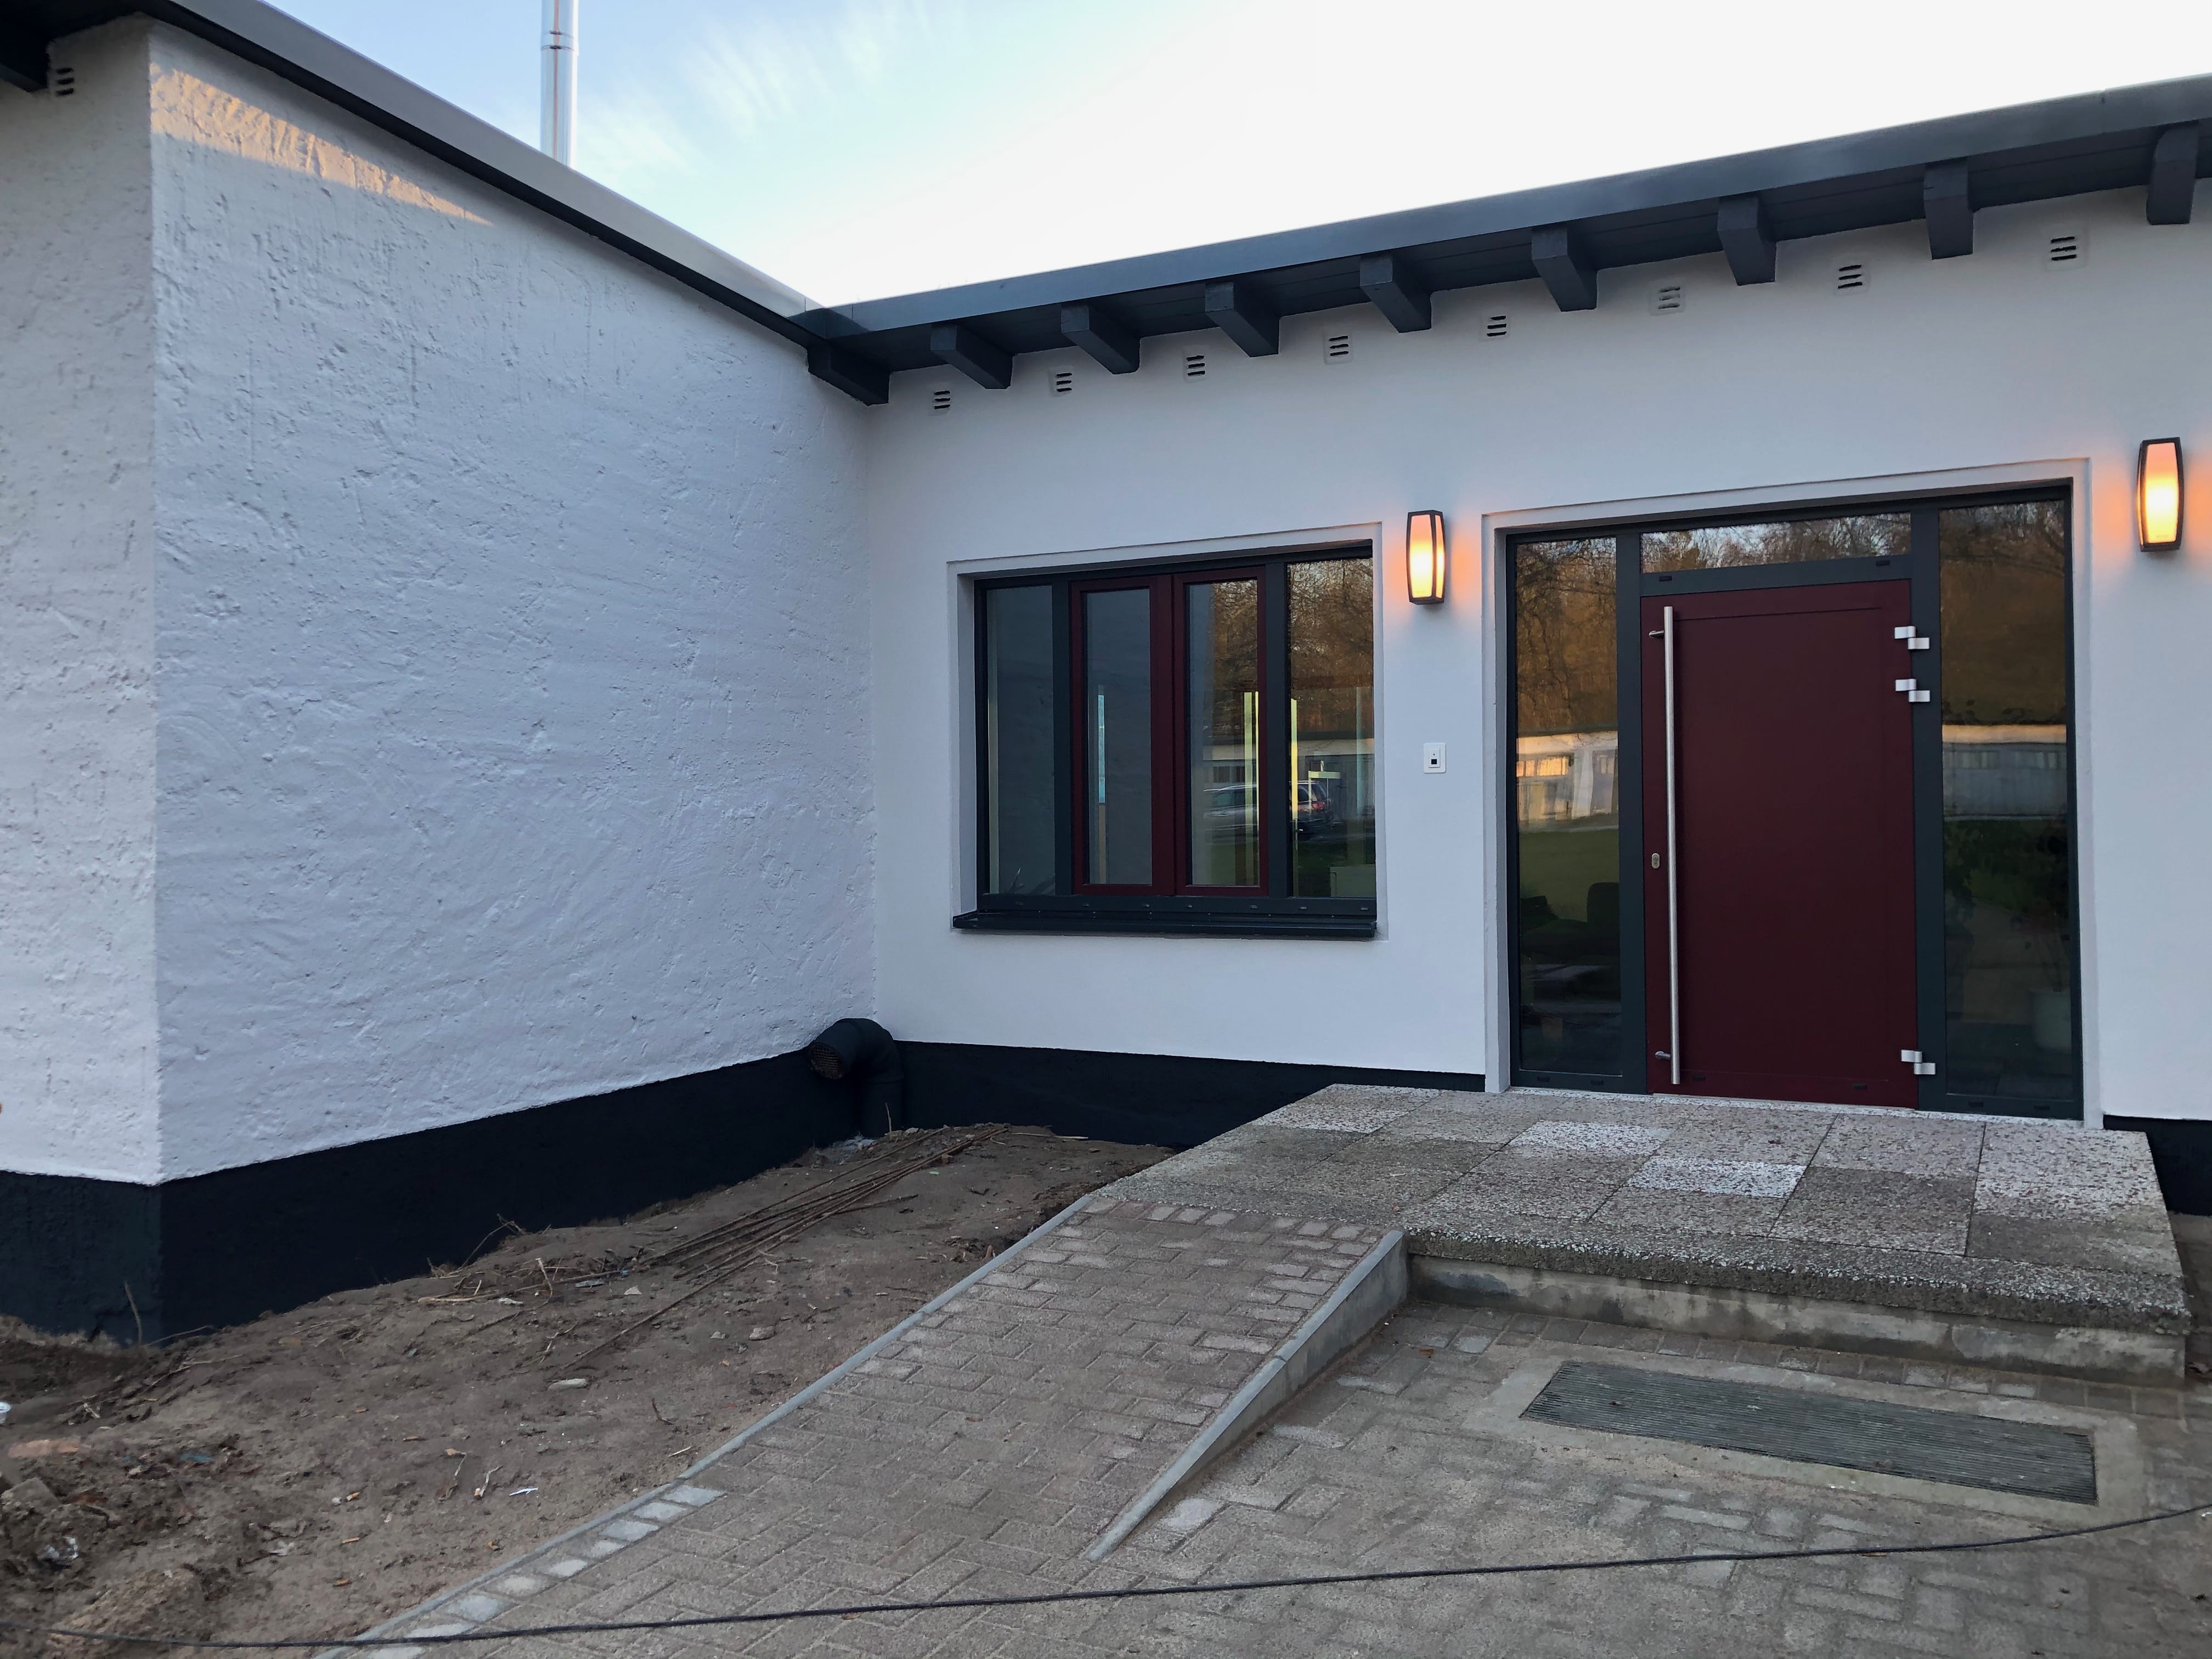 Projekt in Wismar, gebaut wurde eine Schule als Sanierung, Bauvorhaben vom 01.11.2019